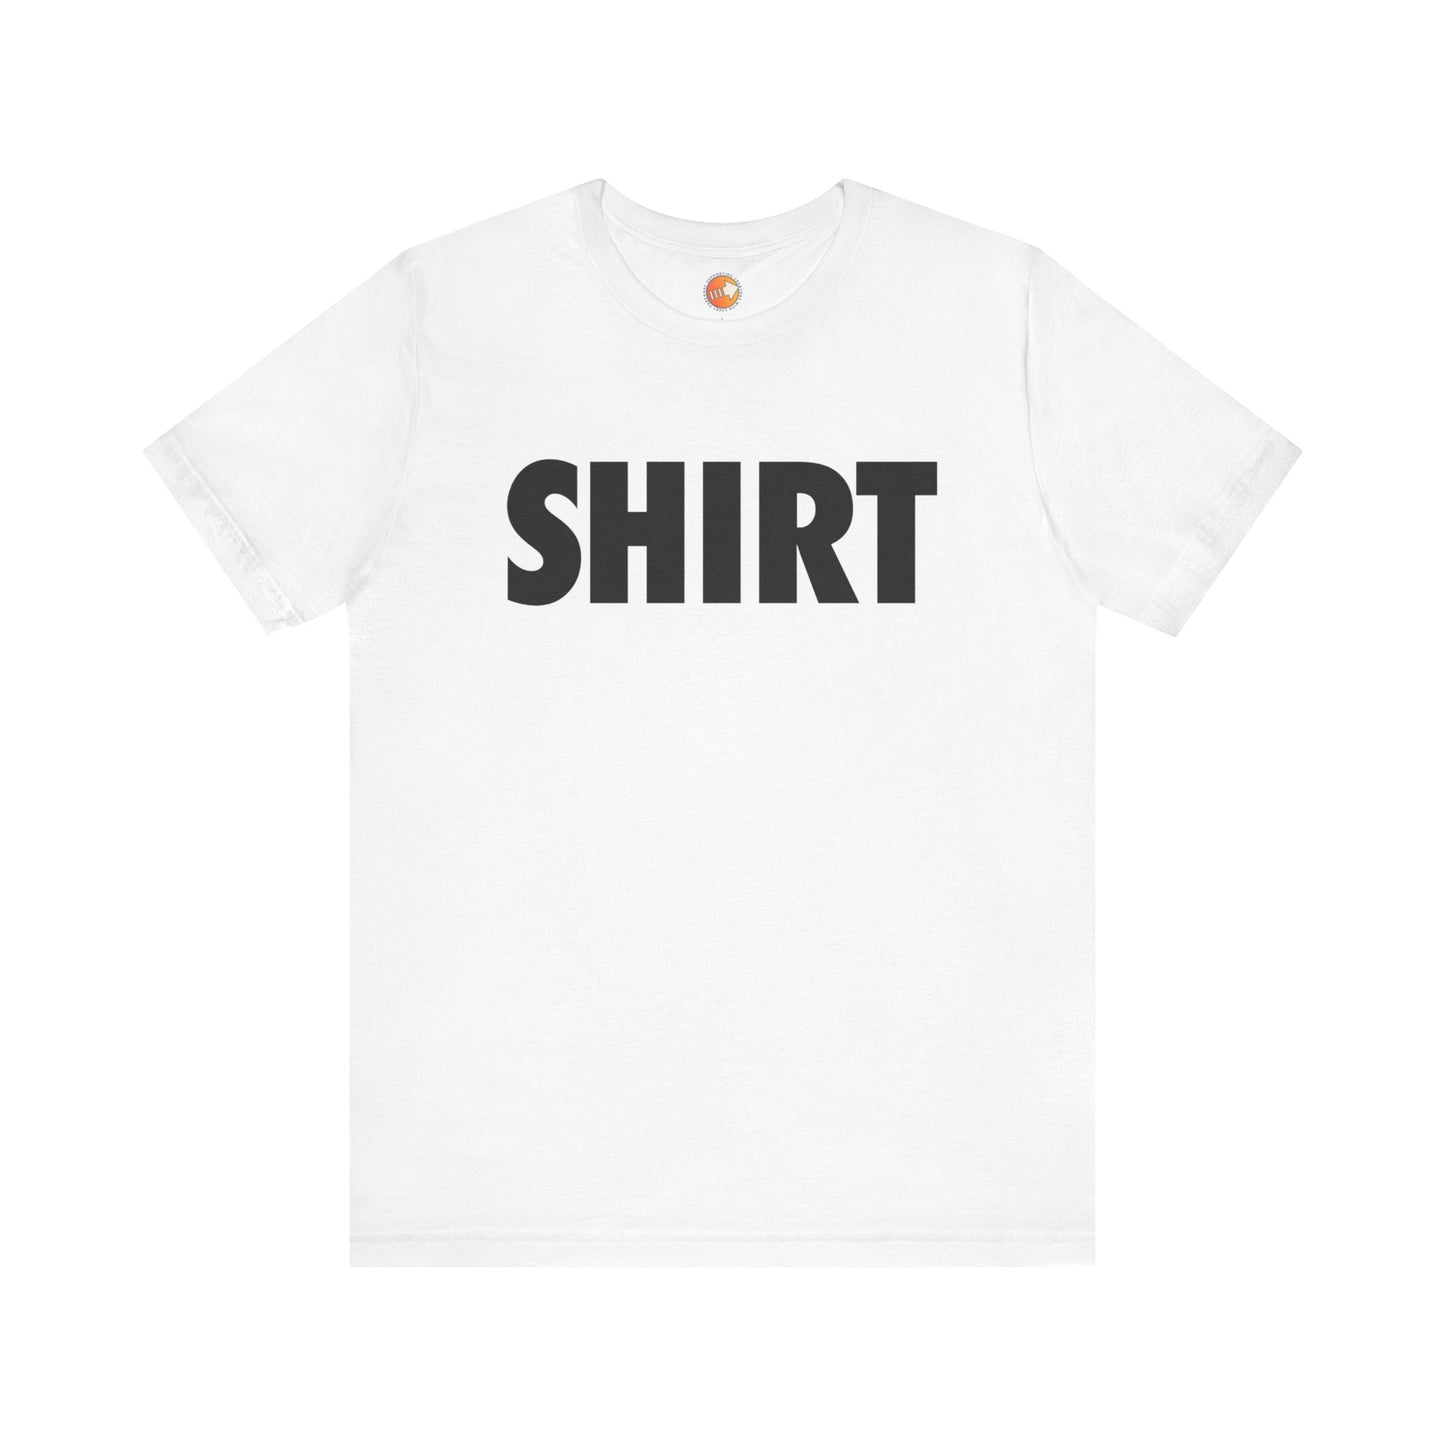 SHIRT Shirt (black text) - Unisex Jersey Short Sleeve Tee - The Gamers